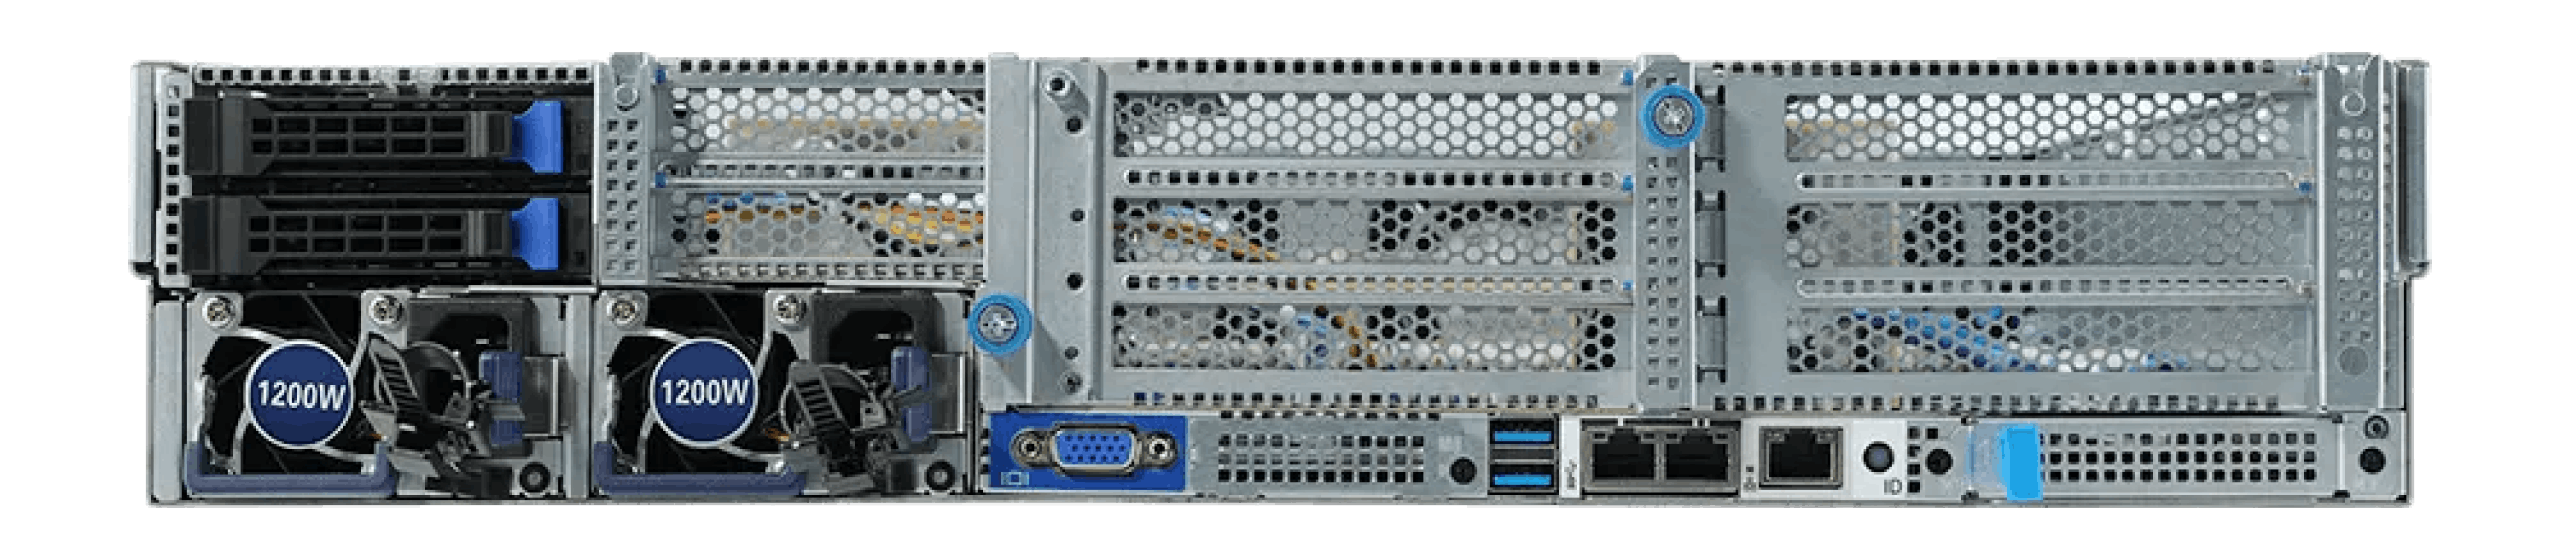 Back ports of the Eland Pro 2U server